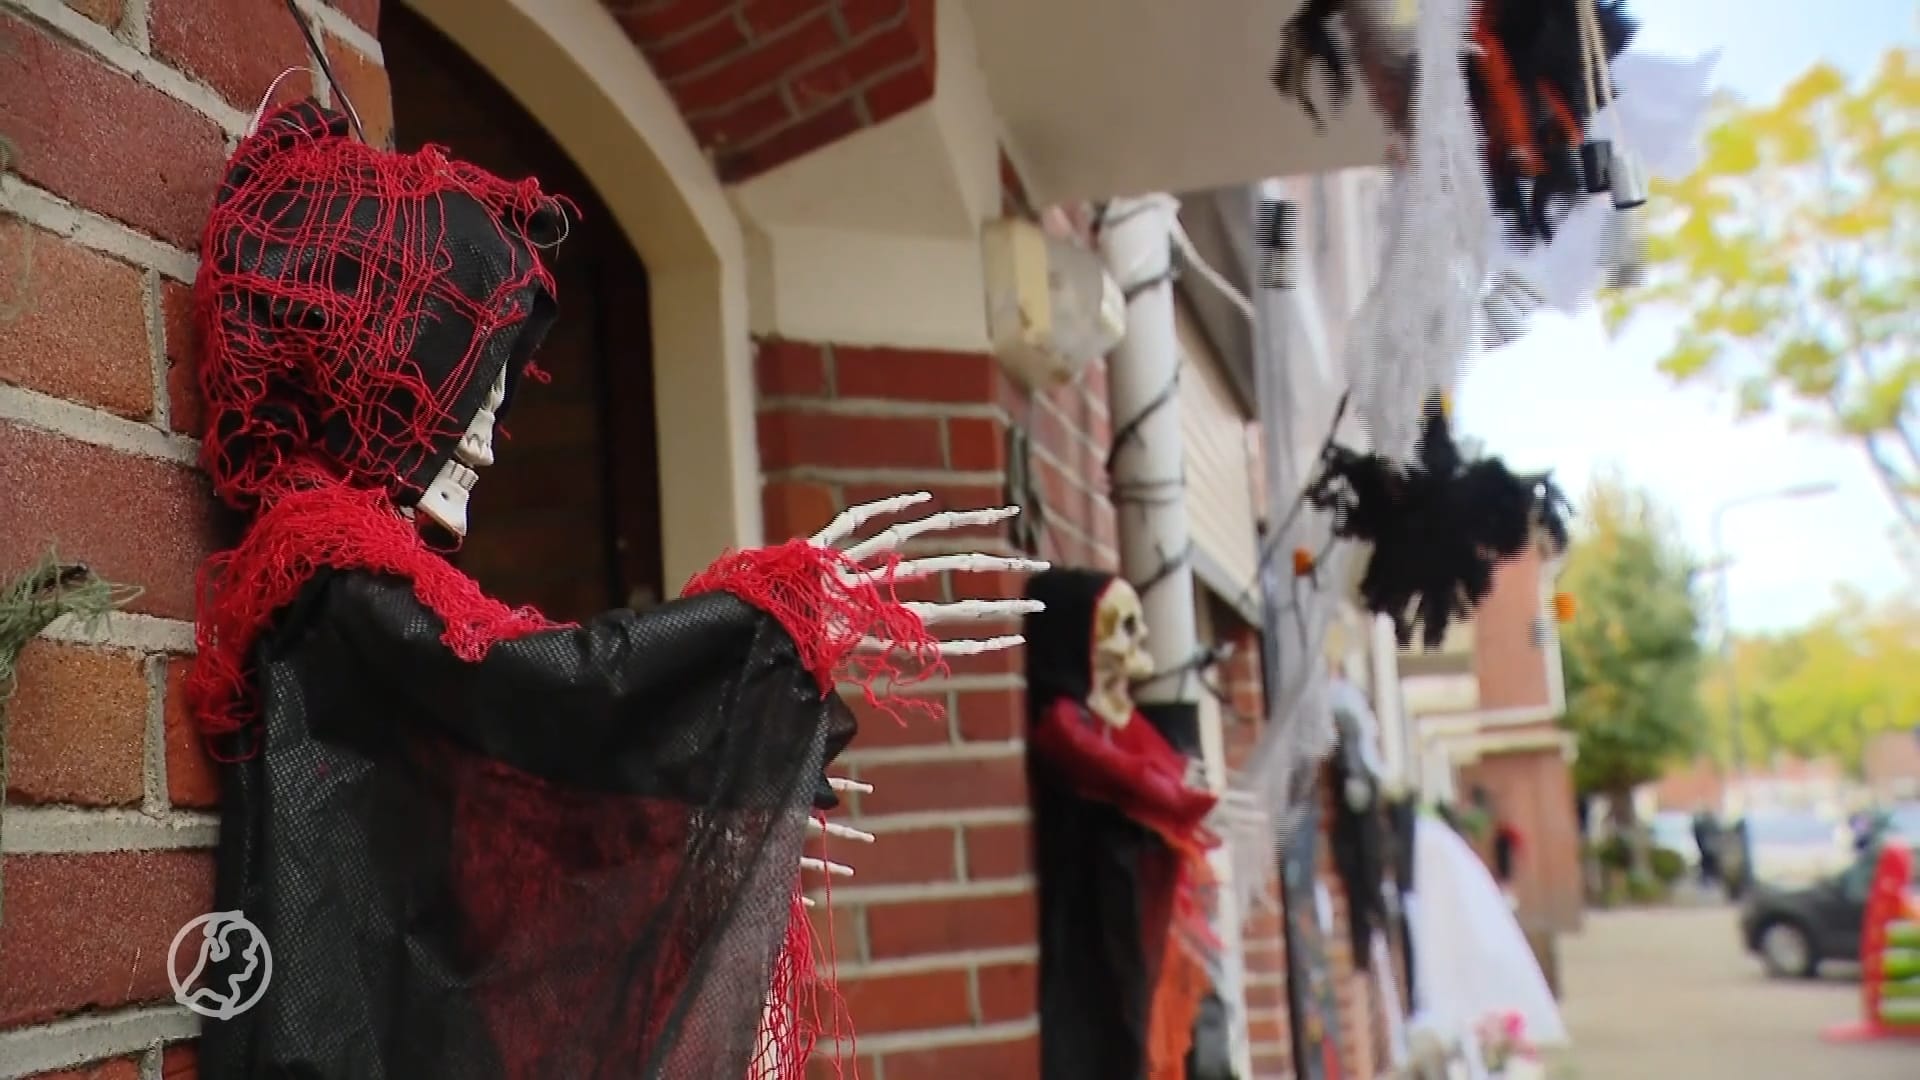 ZIEN: Bredase buurt verandert in horrorstraat rond Halloween